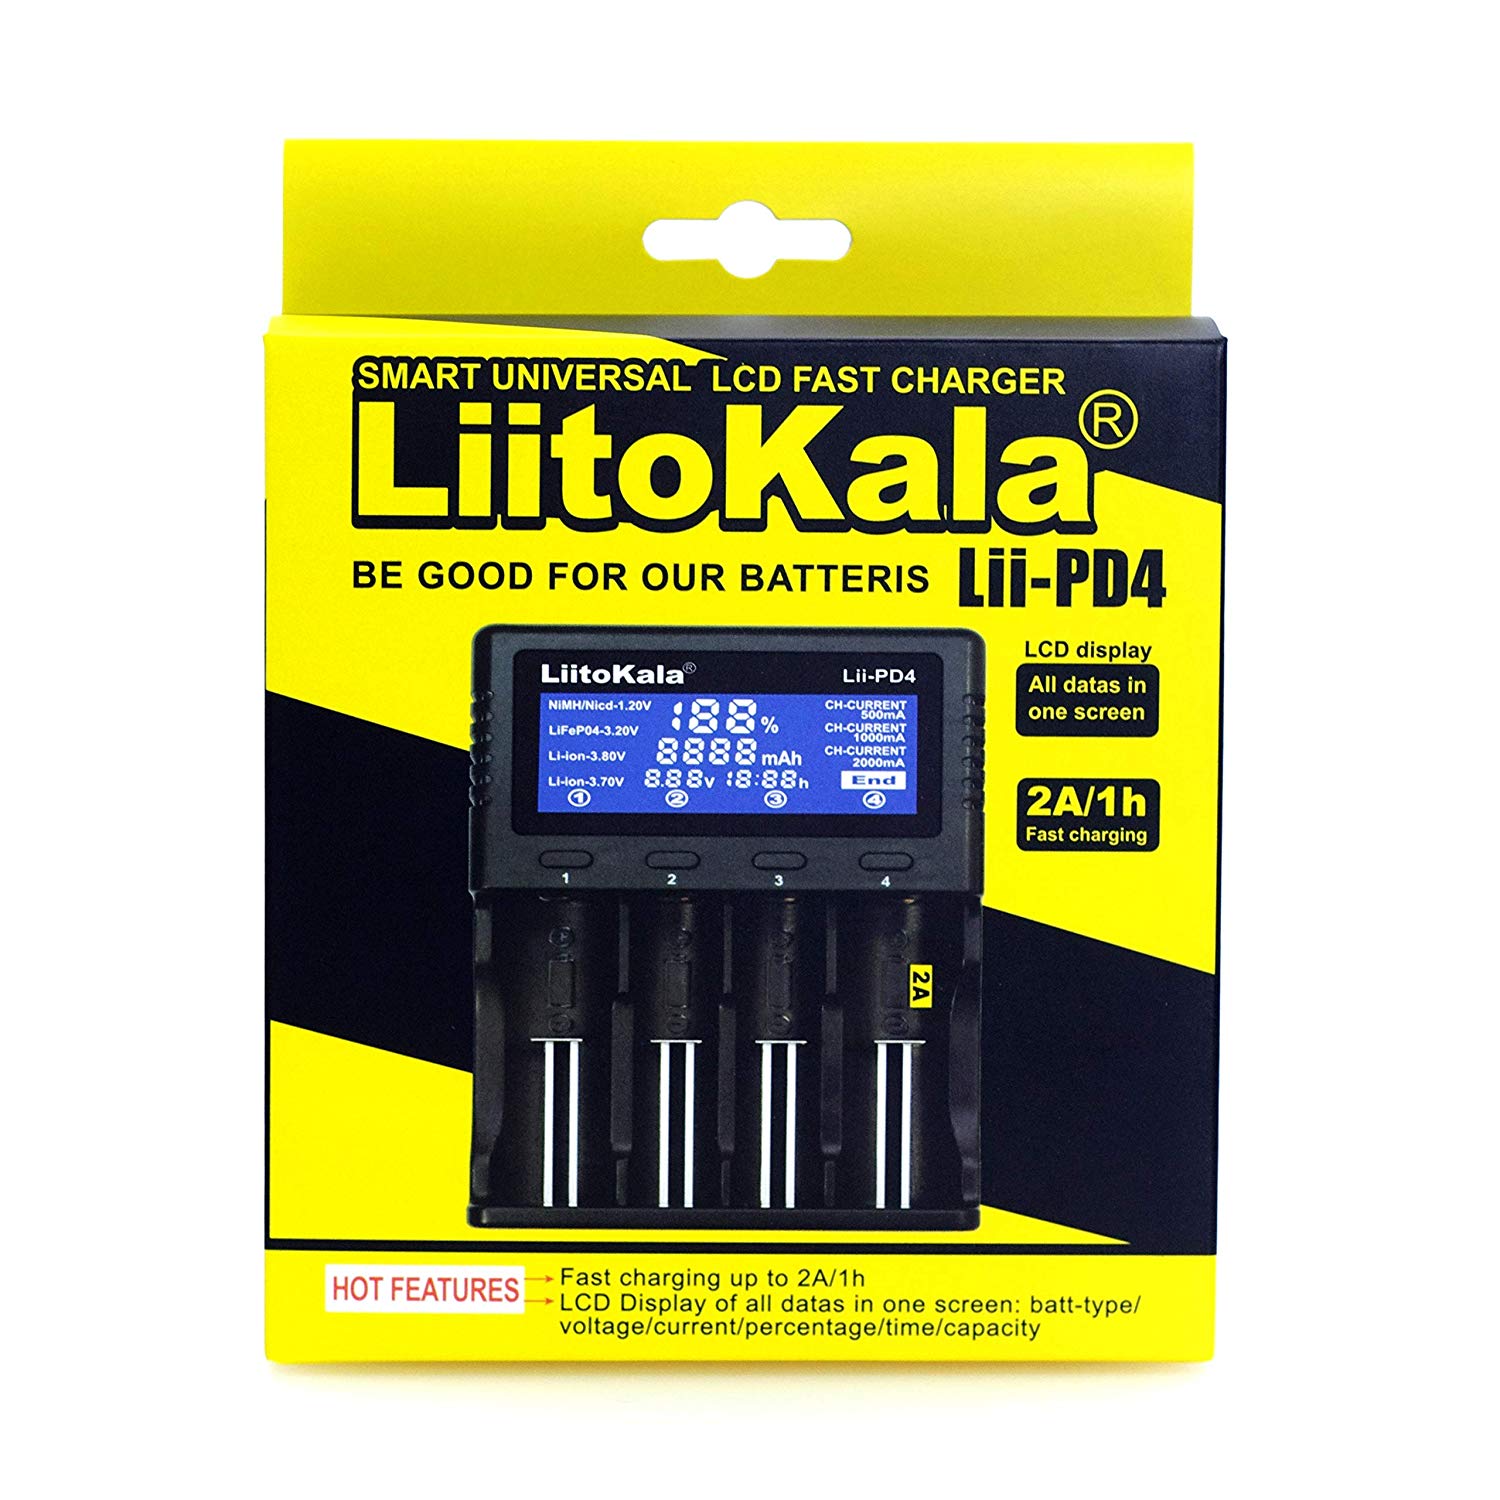 Liitokala-Lii-PD4-LCD-37V-266502170020700186501849018350176701750016340RCR1231450010440-12V-AA-AAA-S-1337374